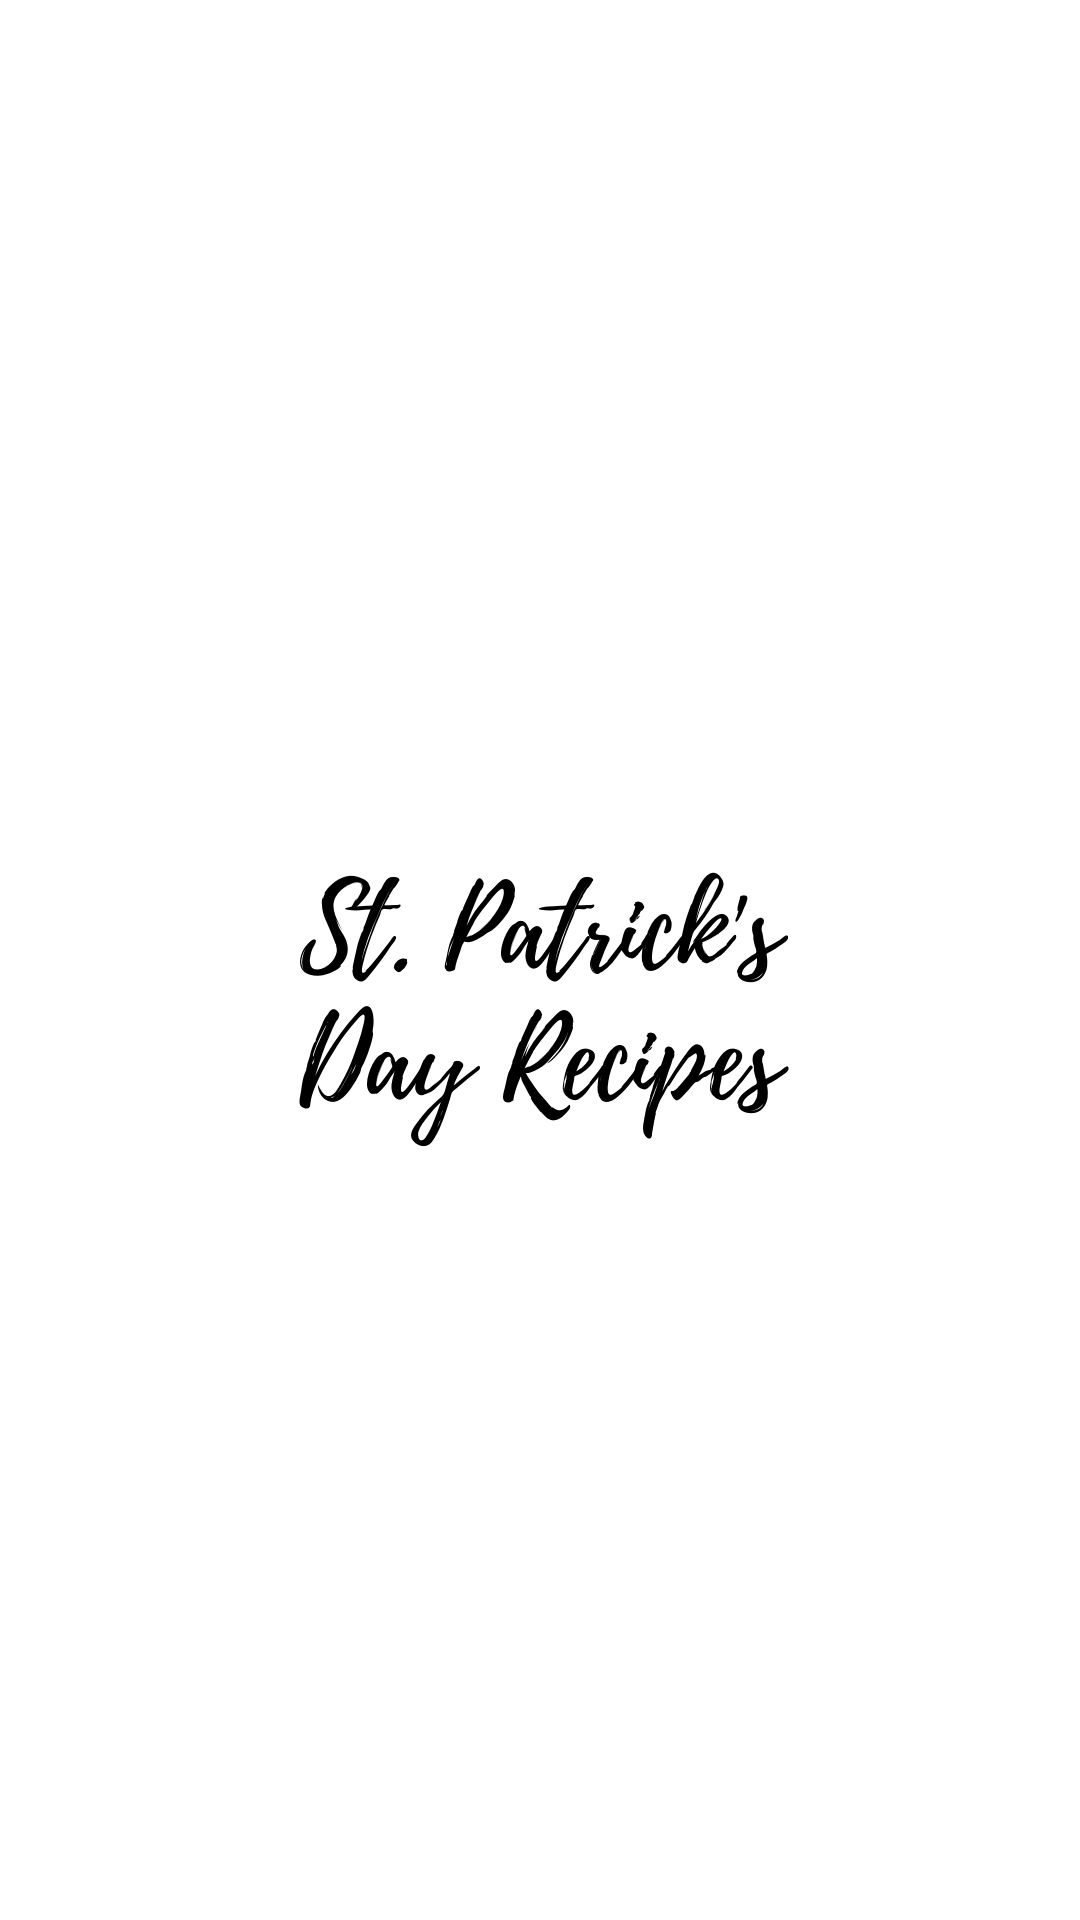 Sarah Bowmar St. Patrick's Day recipes